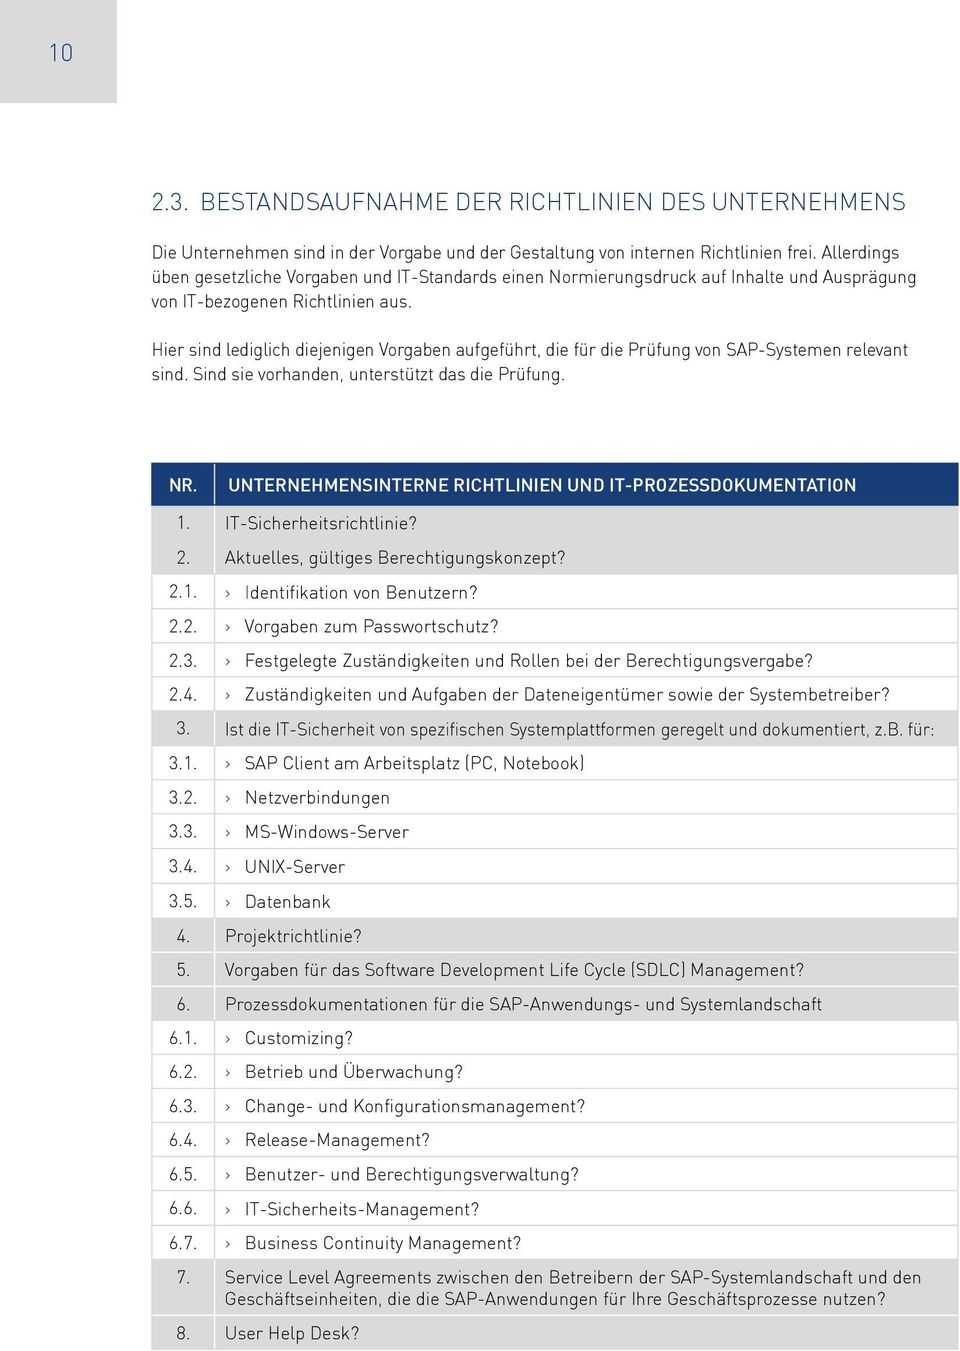 Hier sind lediglich diejenigen Vorgaben aufgeführt, die für die Prüfung von SAP-Systemen relevant sind. Sind sie vorhanden, unterstützt das die Prüfung.